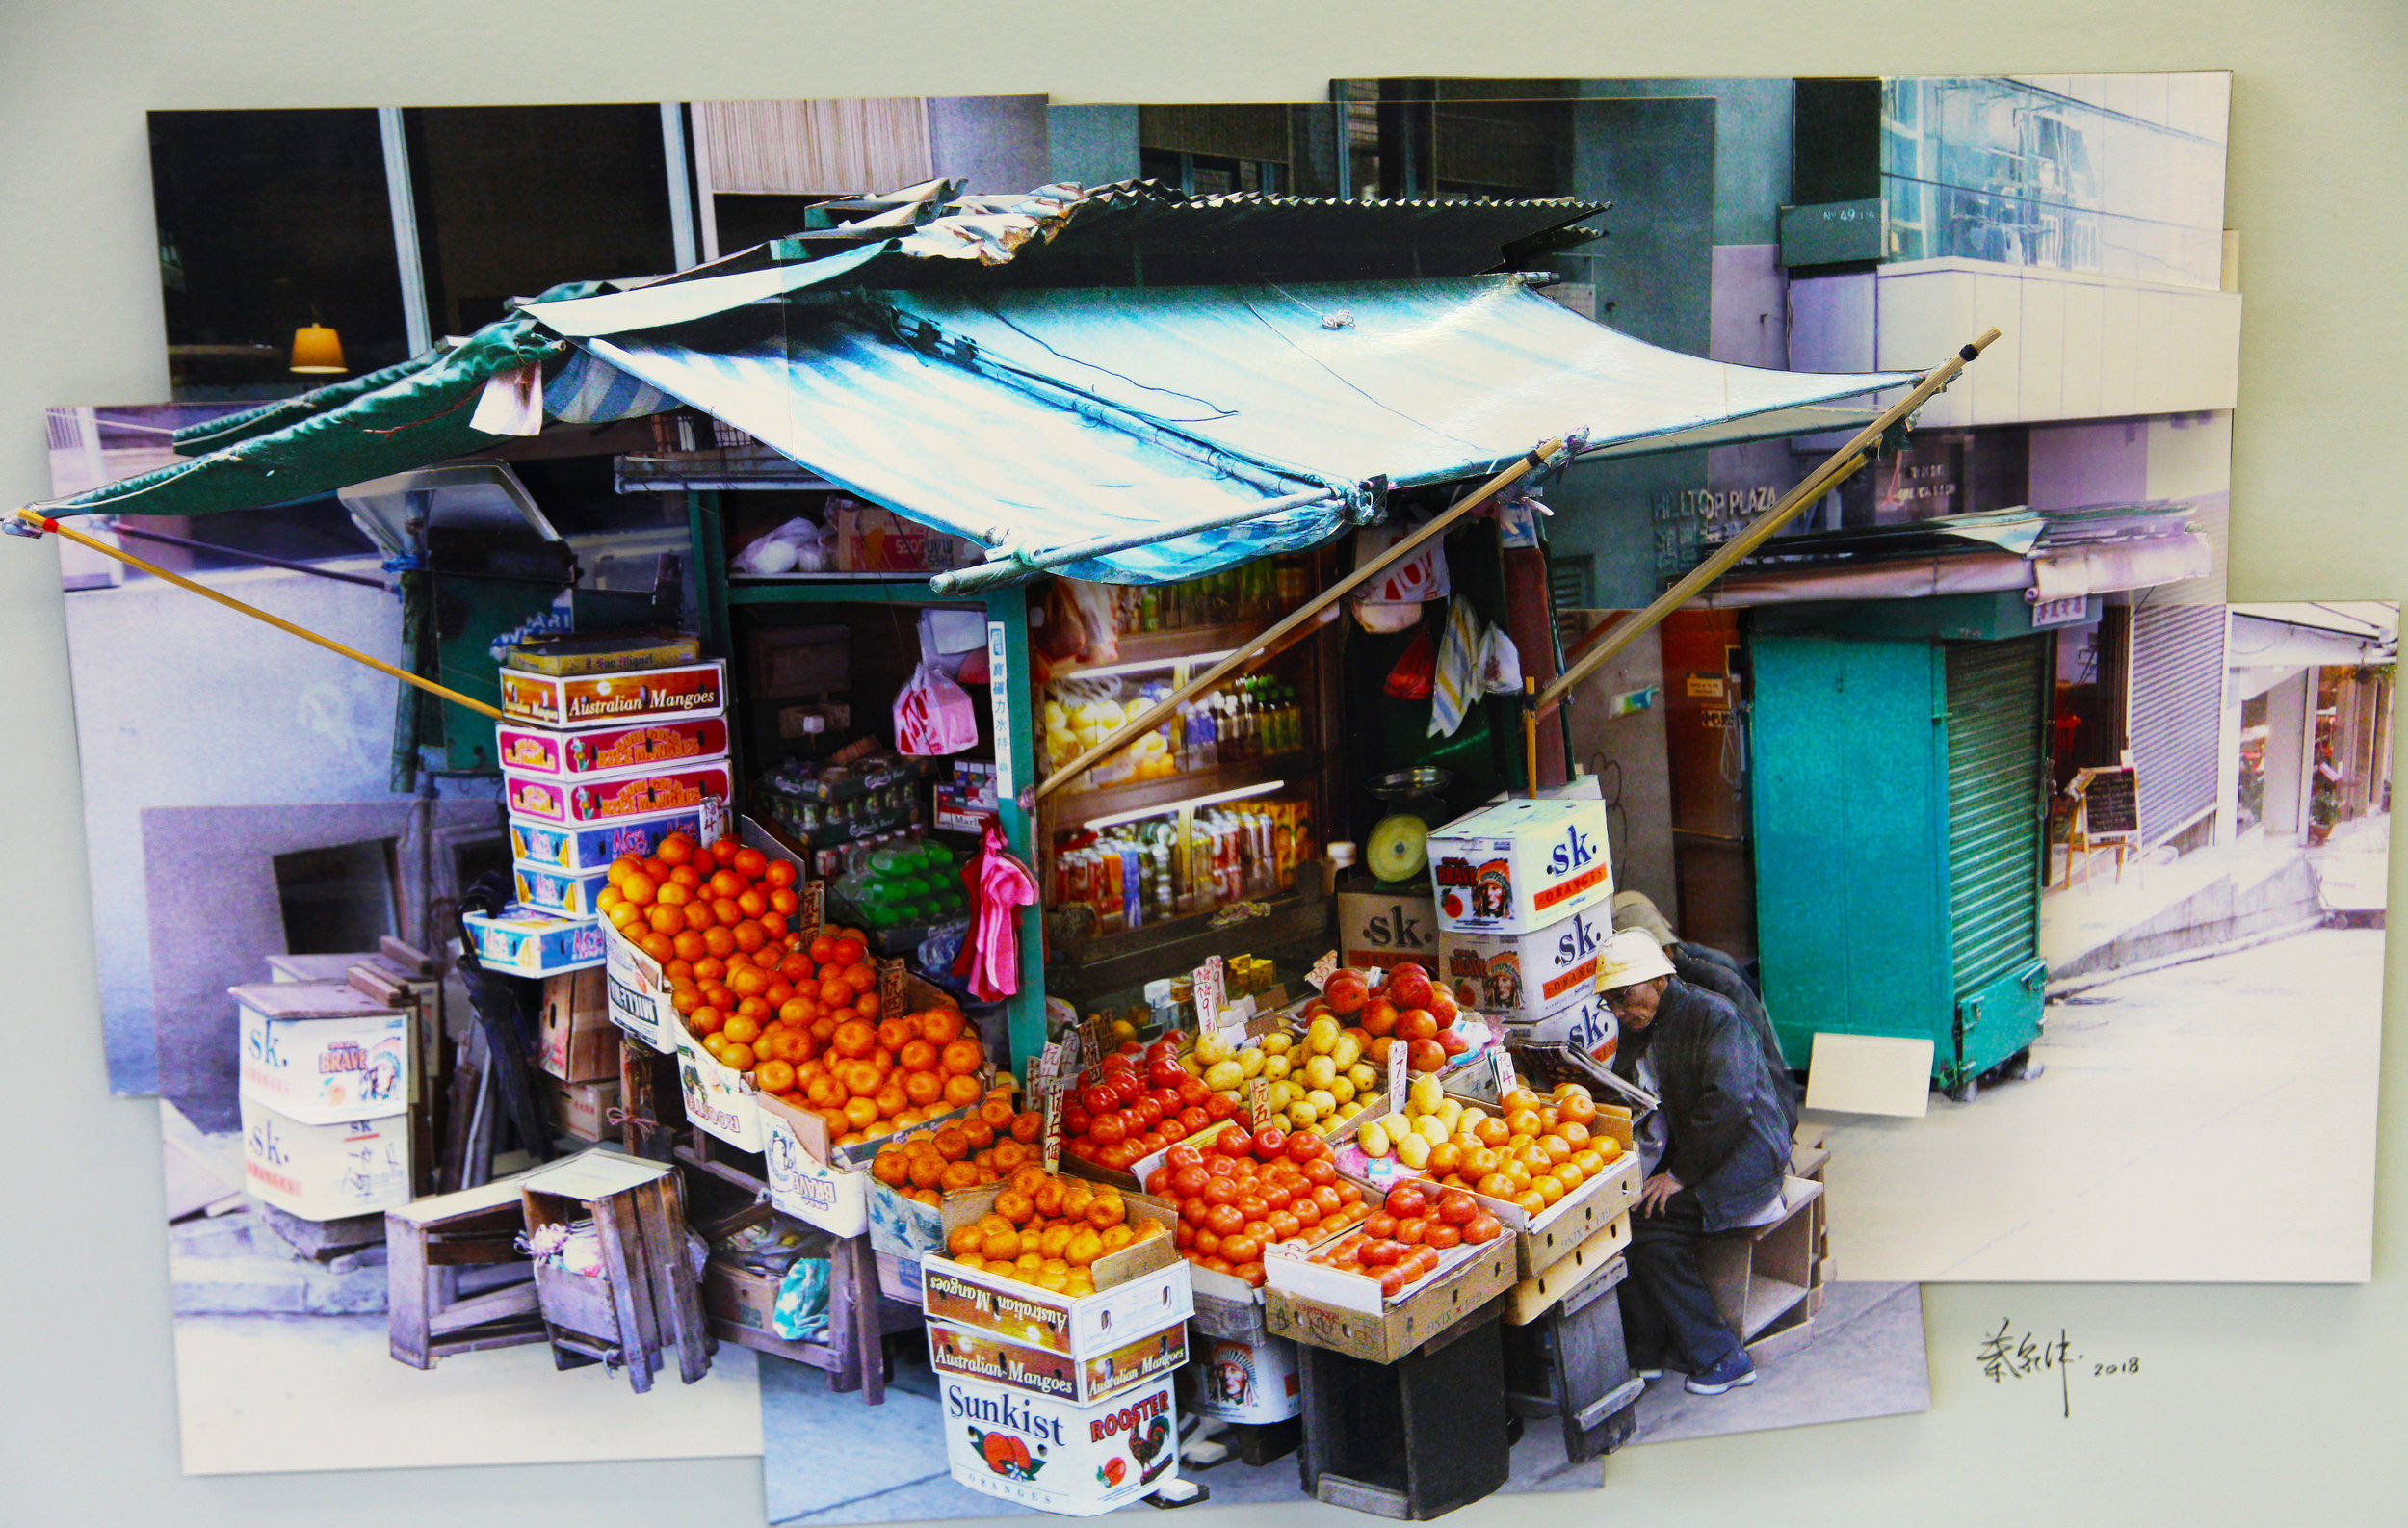 葉家偉 Alexis Ip '水果檔‧中環 Fruit Stall in Central' (Hong Kong, 2018) Courtesy of Blue Lotus Gallery.jpg